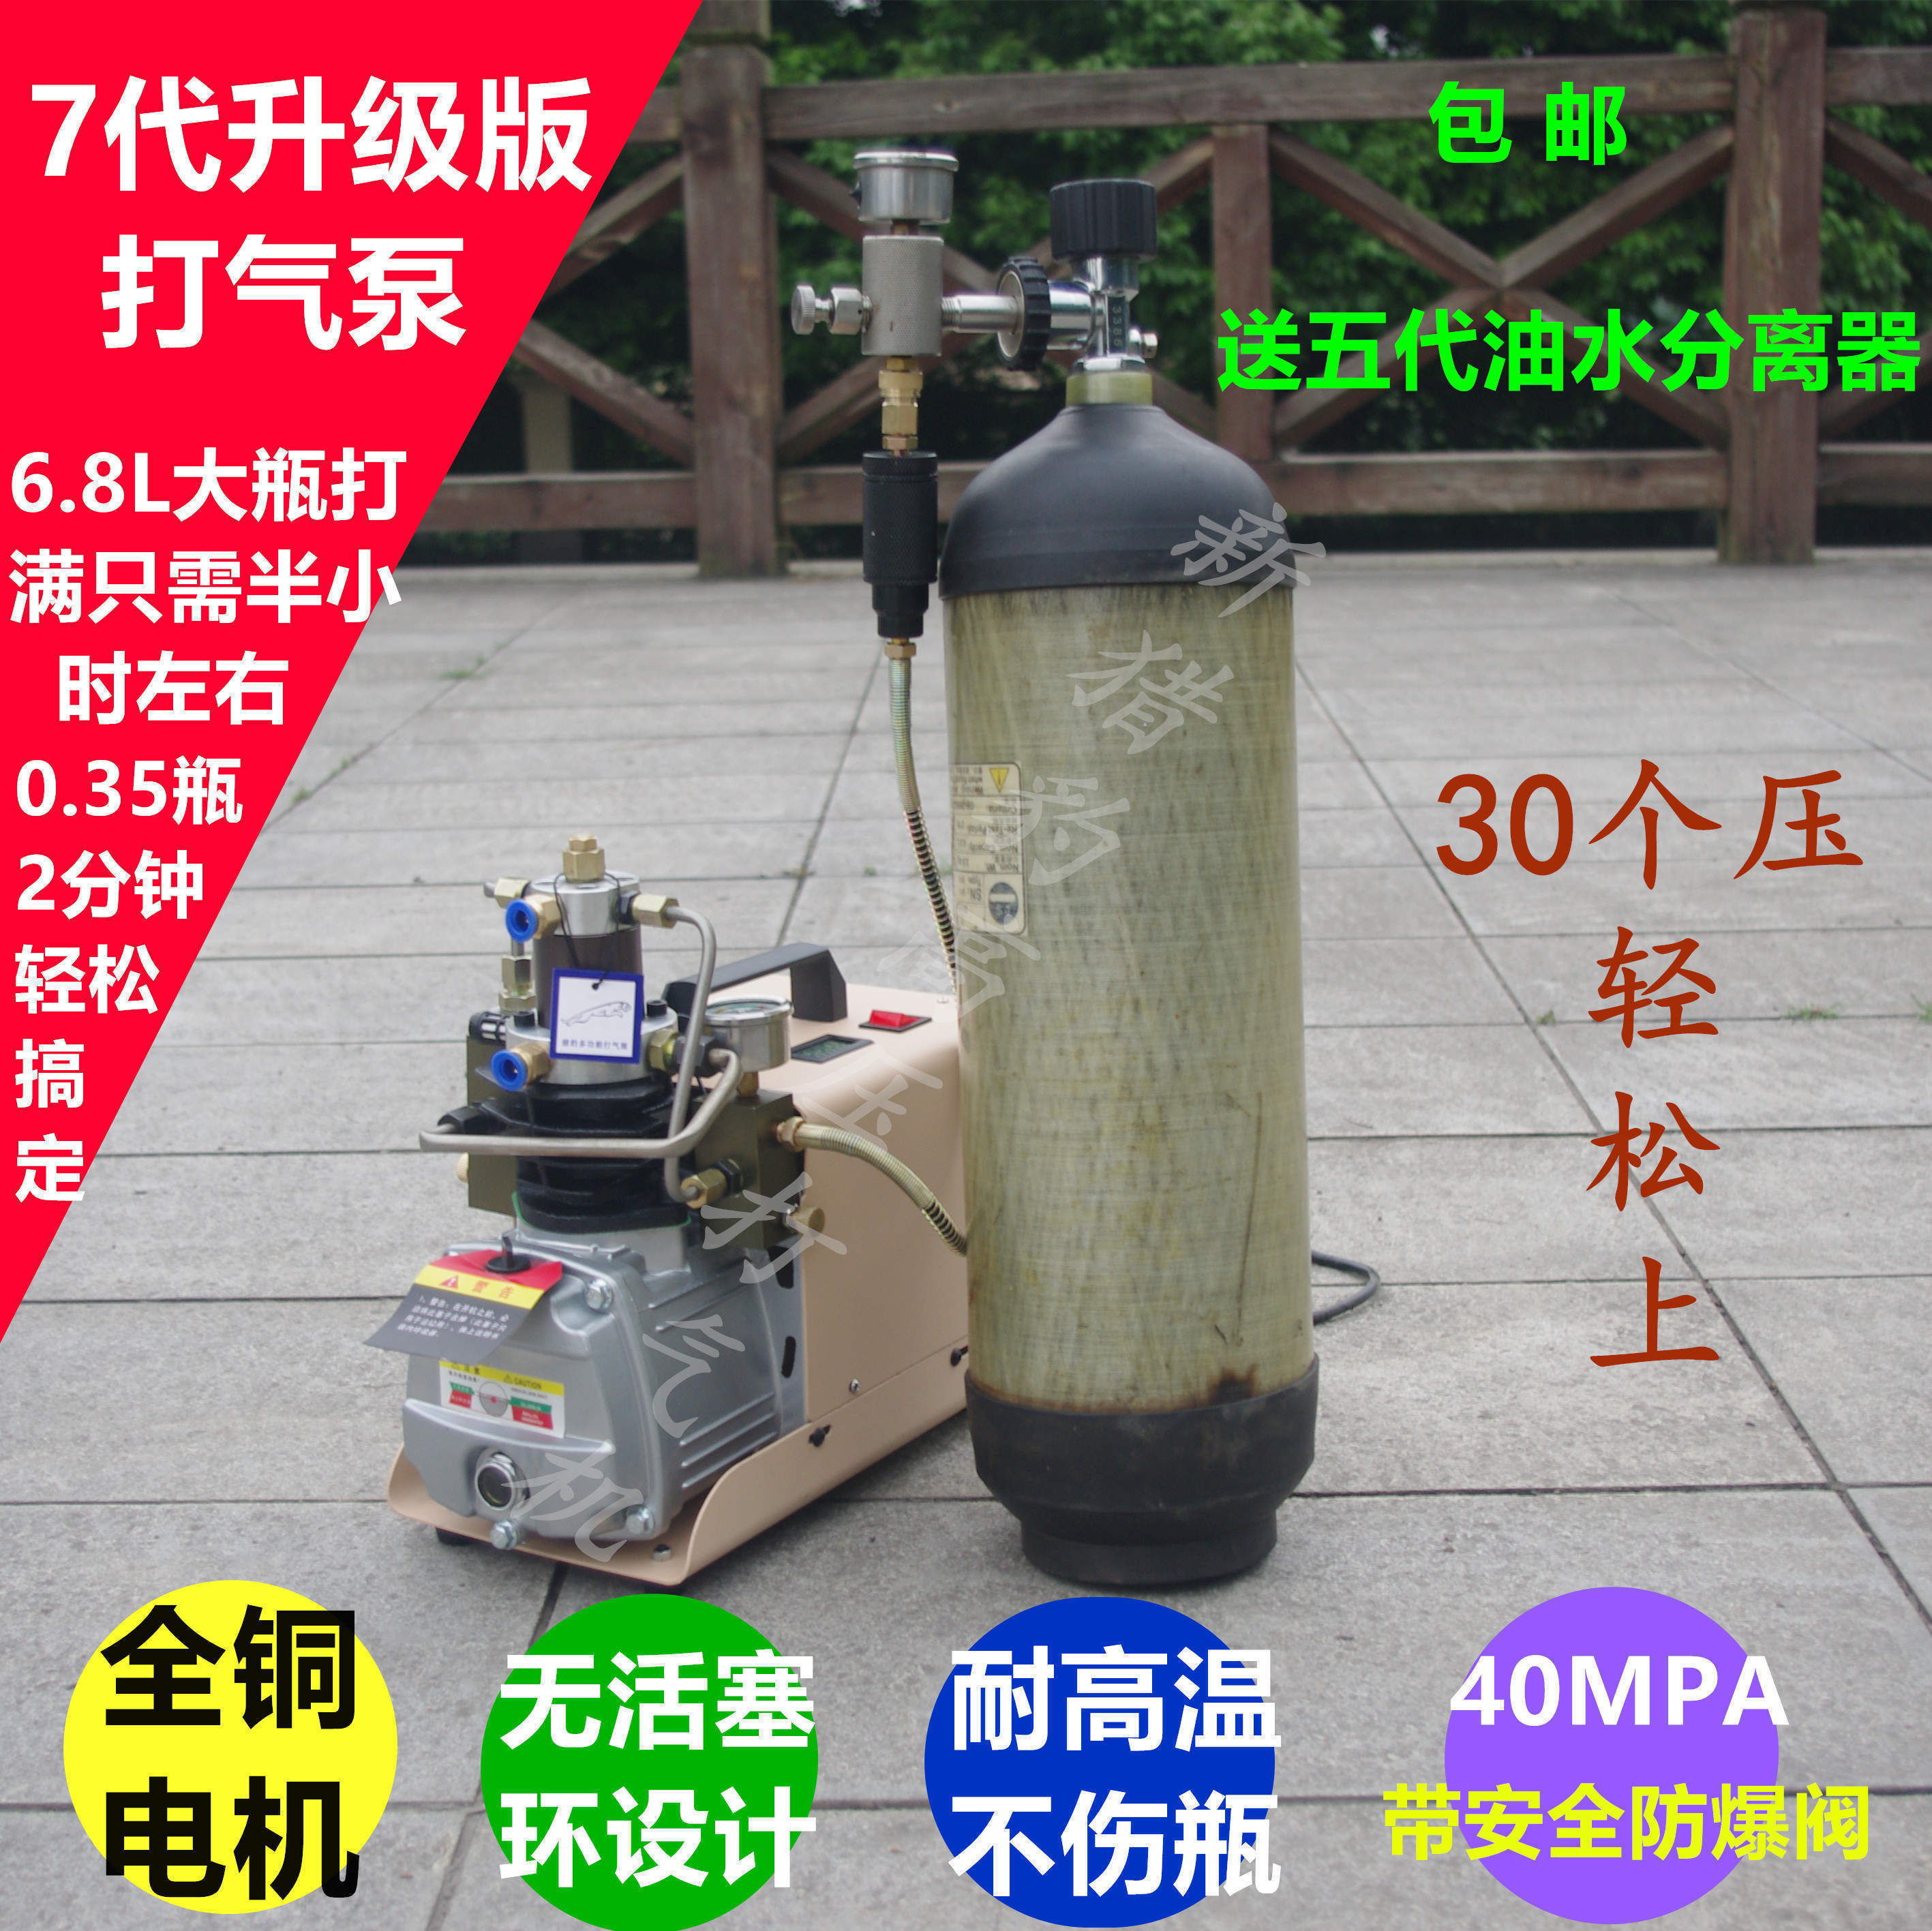 猎豹高压打气机30mpa 气瓶充气泵40map压 水冷单缸电动高压冲气泵